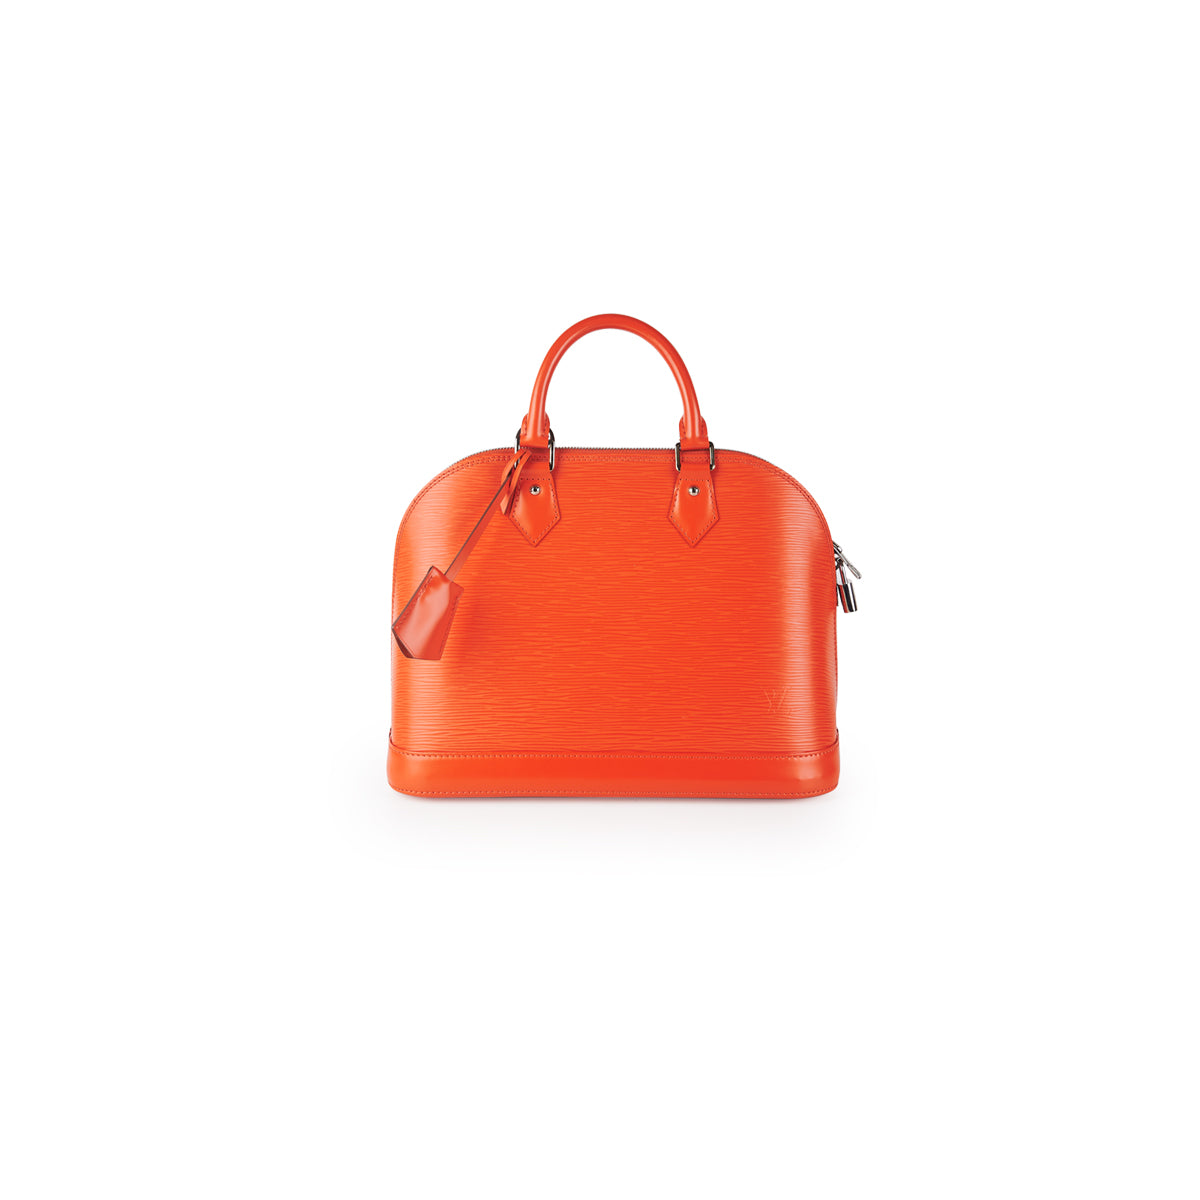 Louis Vuitton Alma PM Epi Orange - THE PURSE AFFAIR